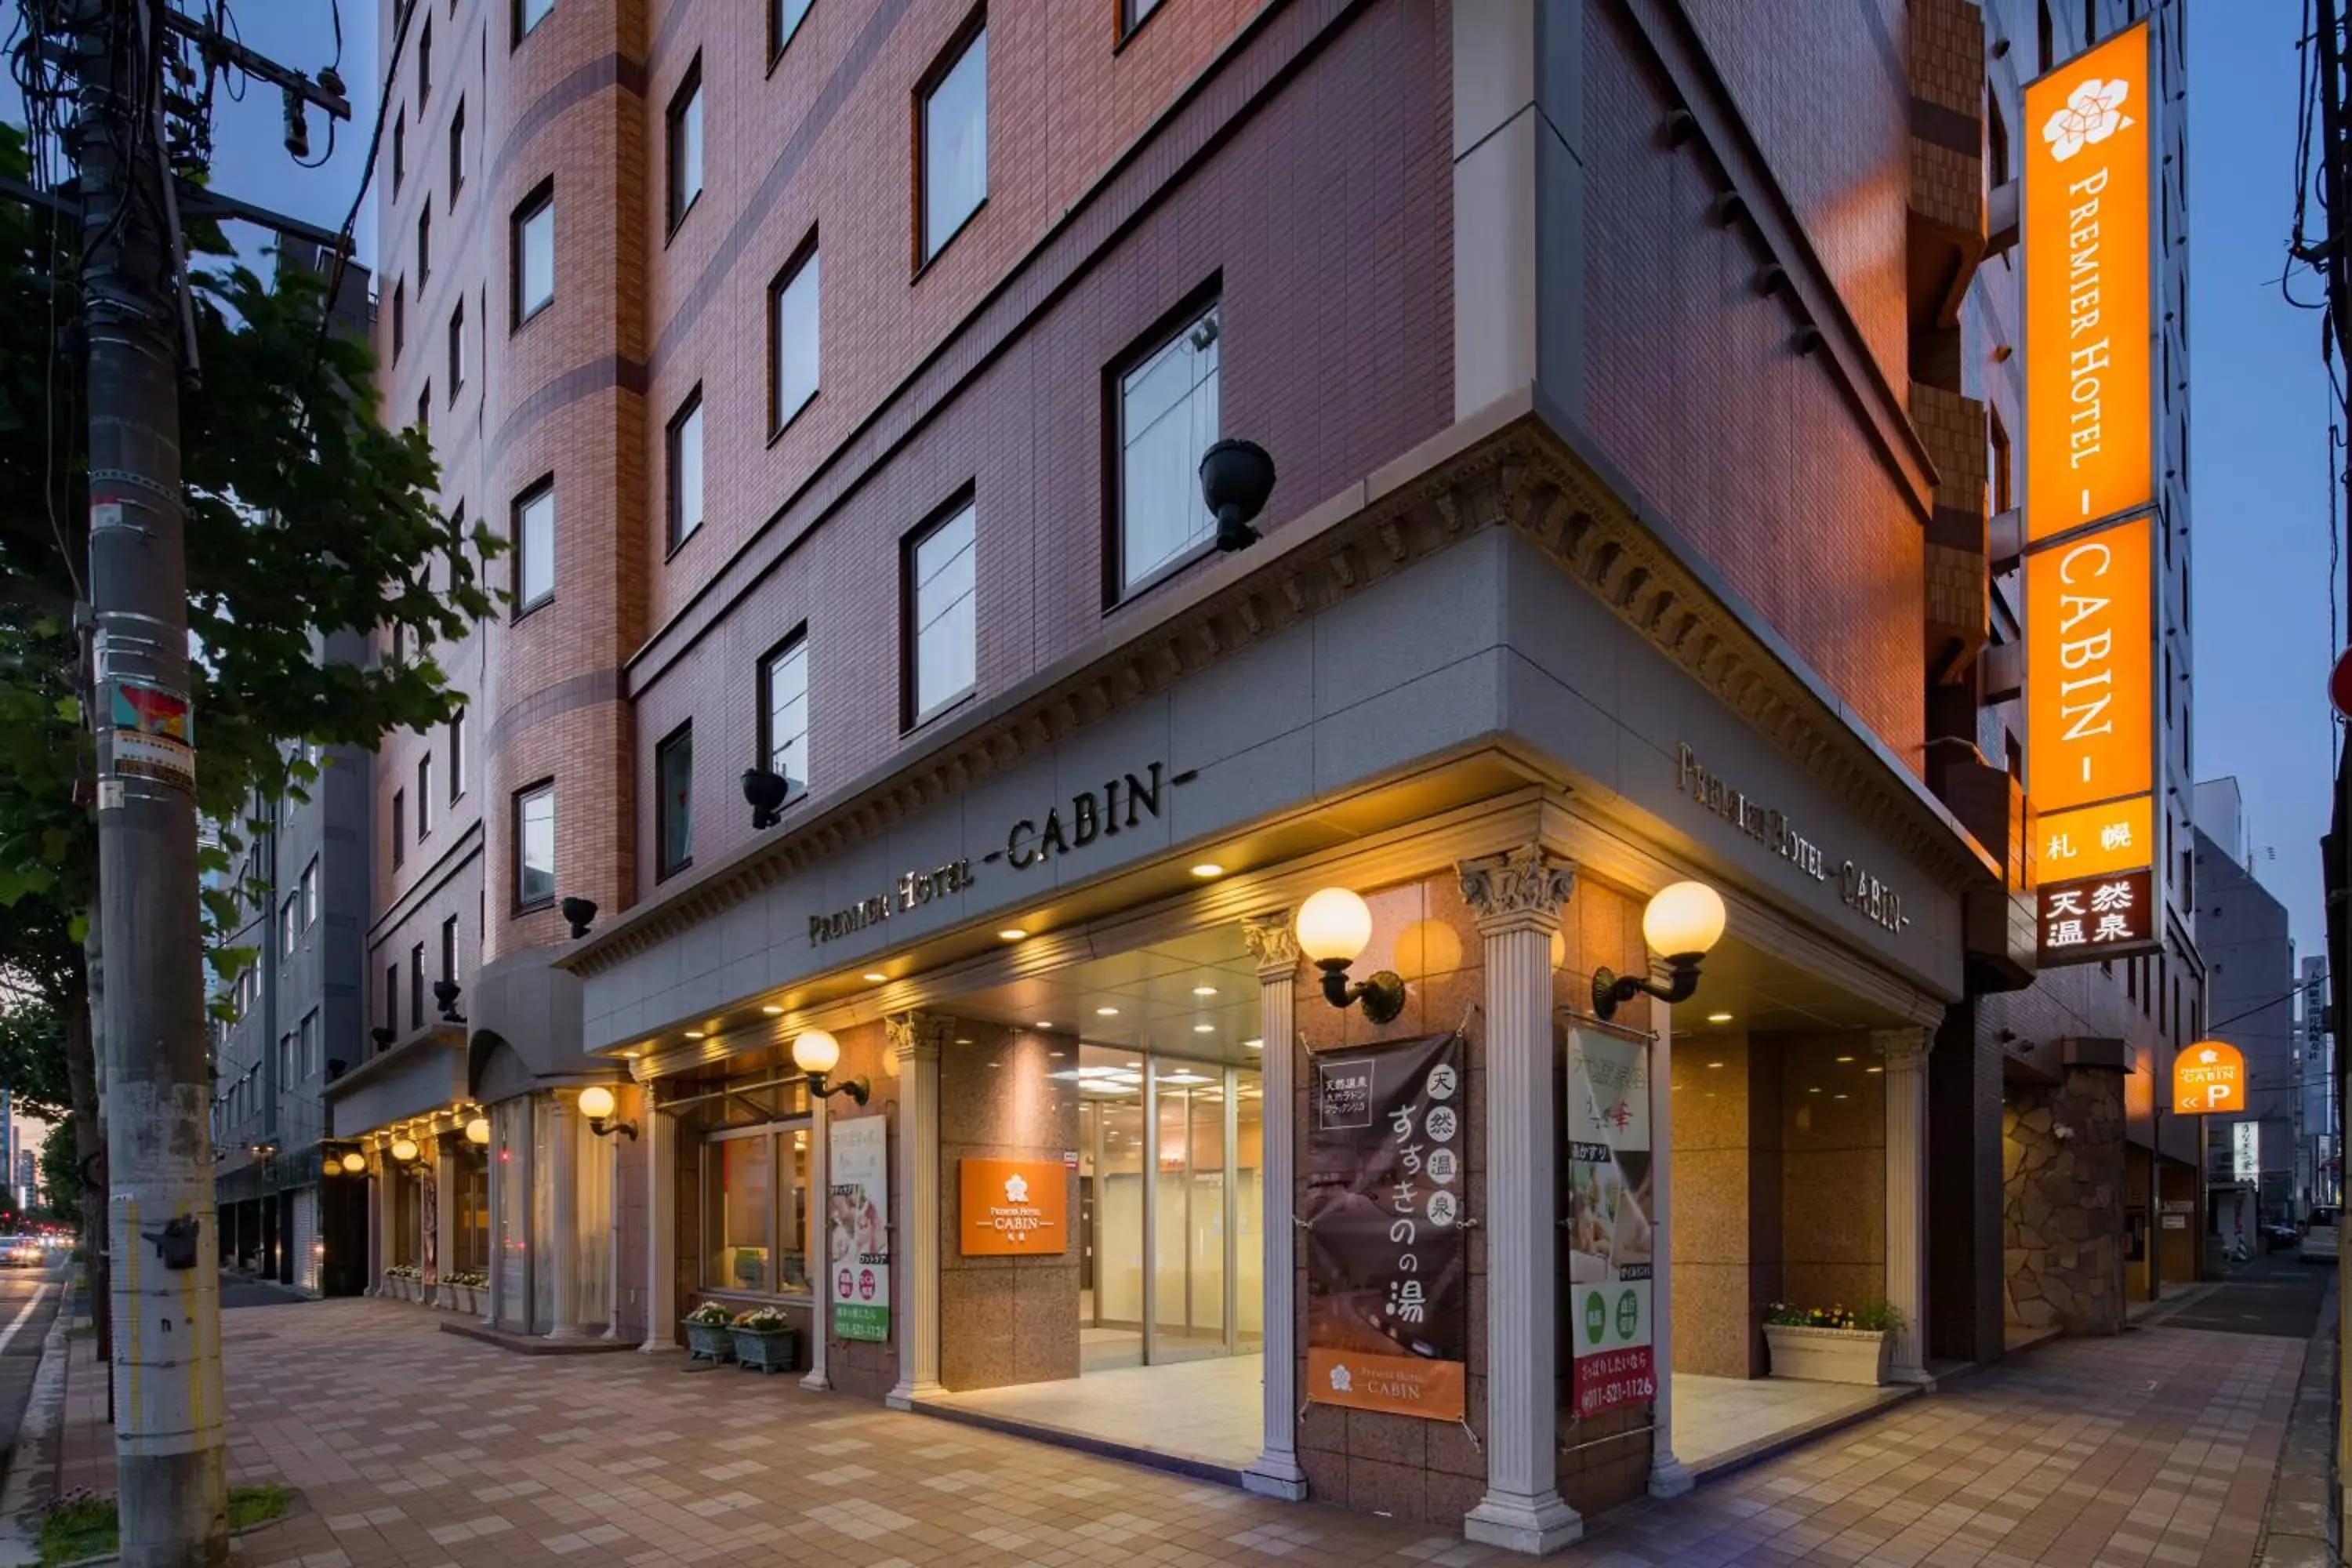 Property building in Premier Hotel-CABIN-Sapporo